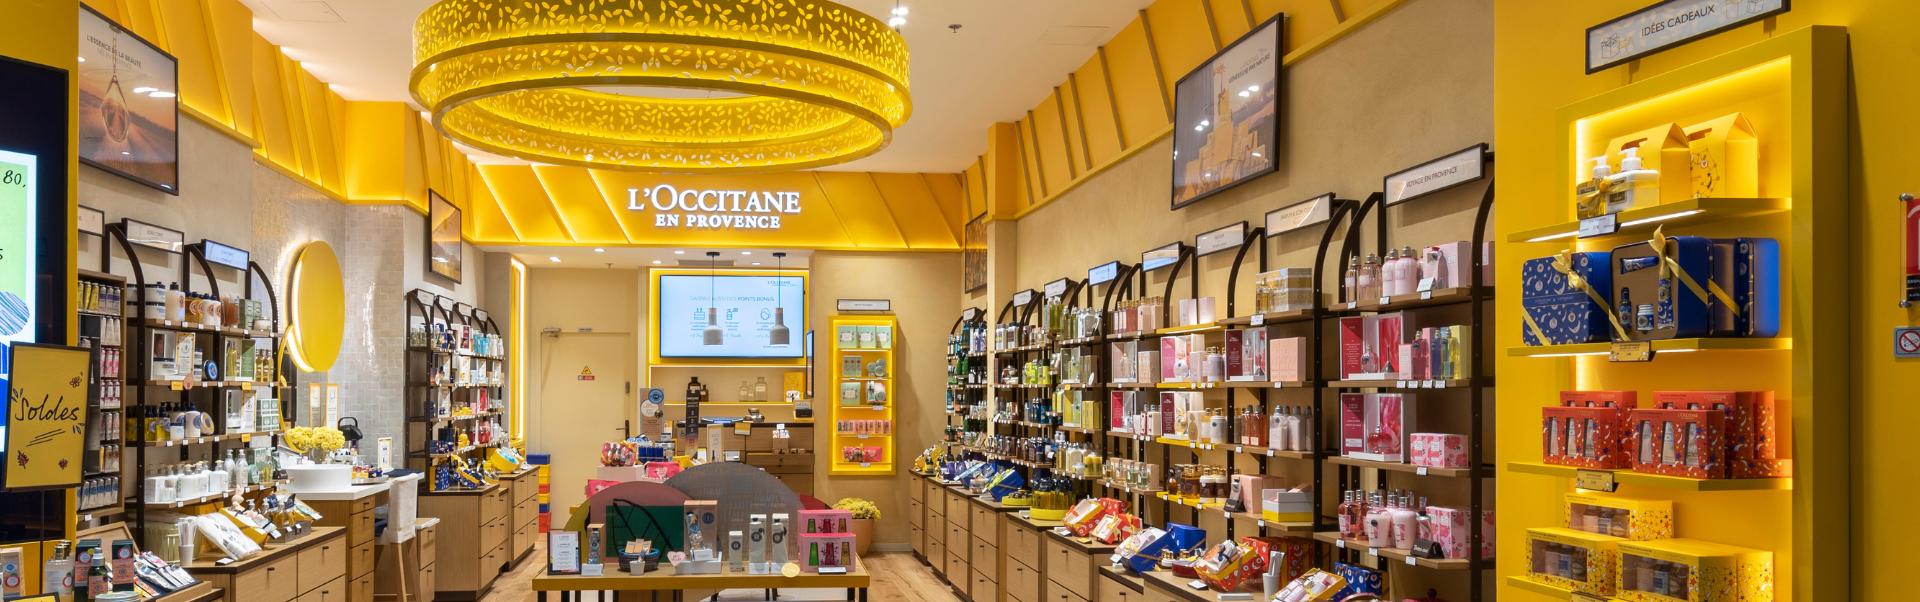 Aménagement boutique soins, beauté et Parfum - L'Occitane